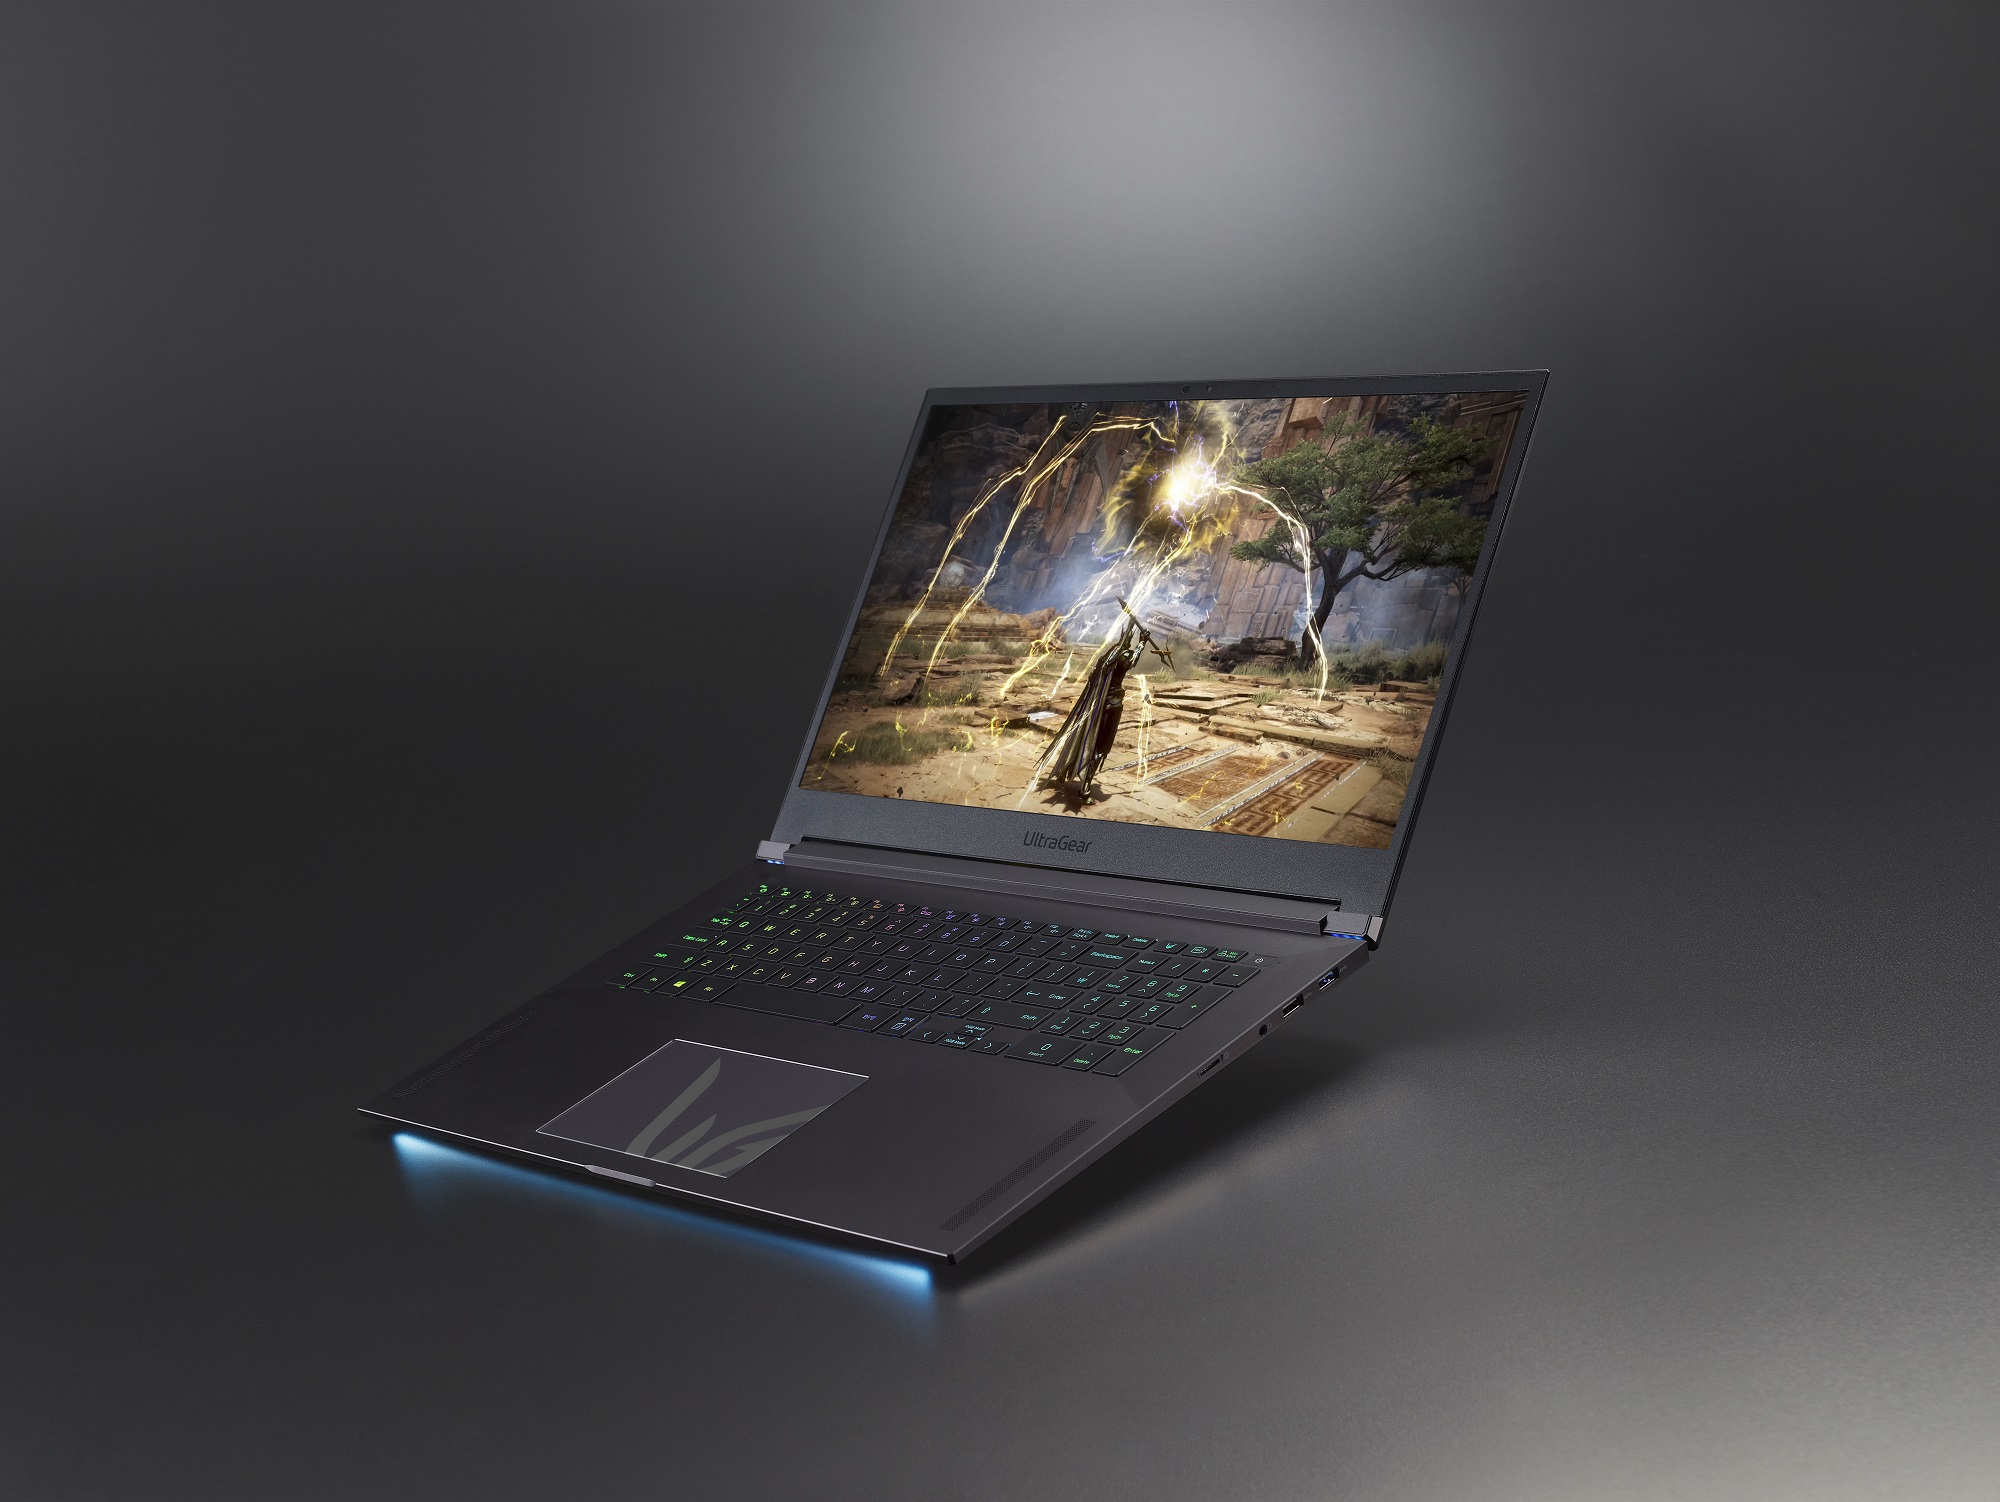 LG annonce son premier PC portable gaming : un monstre de 17 pouces sous RTX 3080